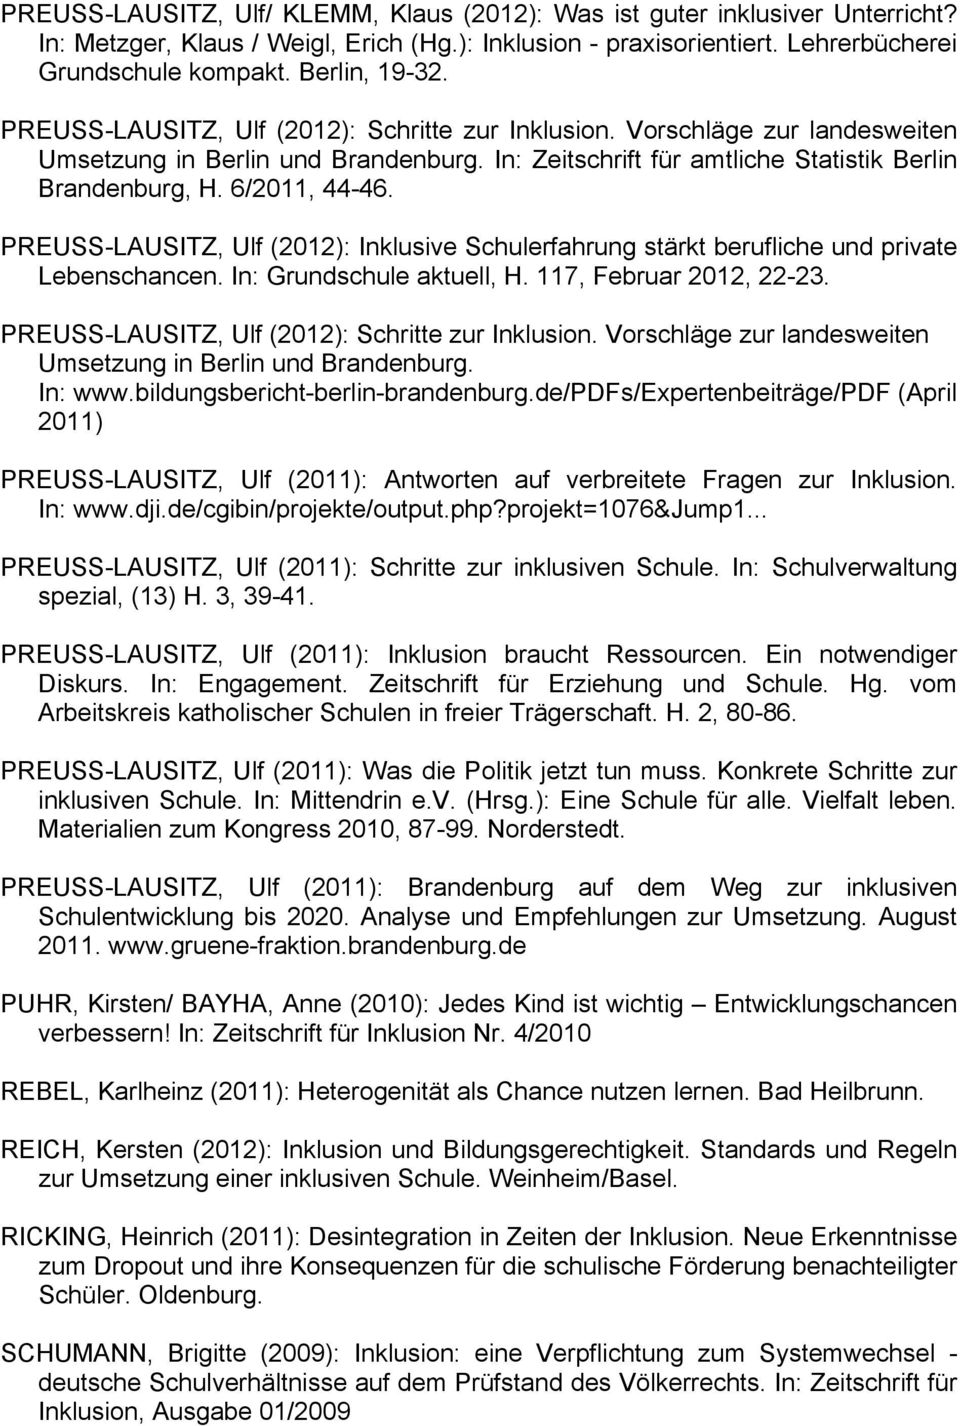 PREUSS-LAUSITZ, Ulf (2012): Inklusive Schulerfahrung stärkt berufliche und private Lebenschancen. In: Grundschule aktuell, H. 117, Februar 2012, 22-23.